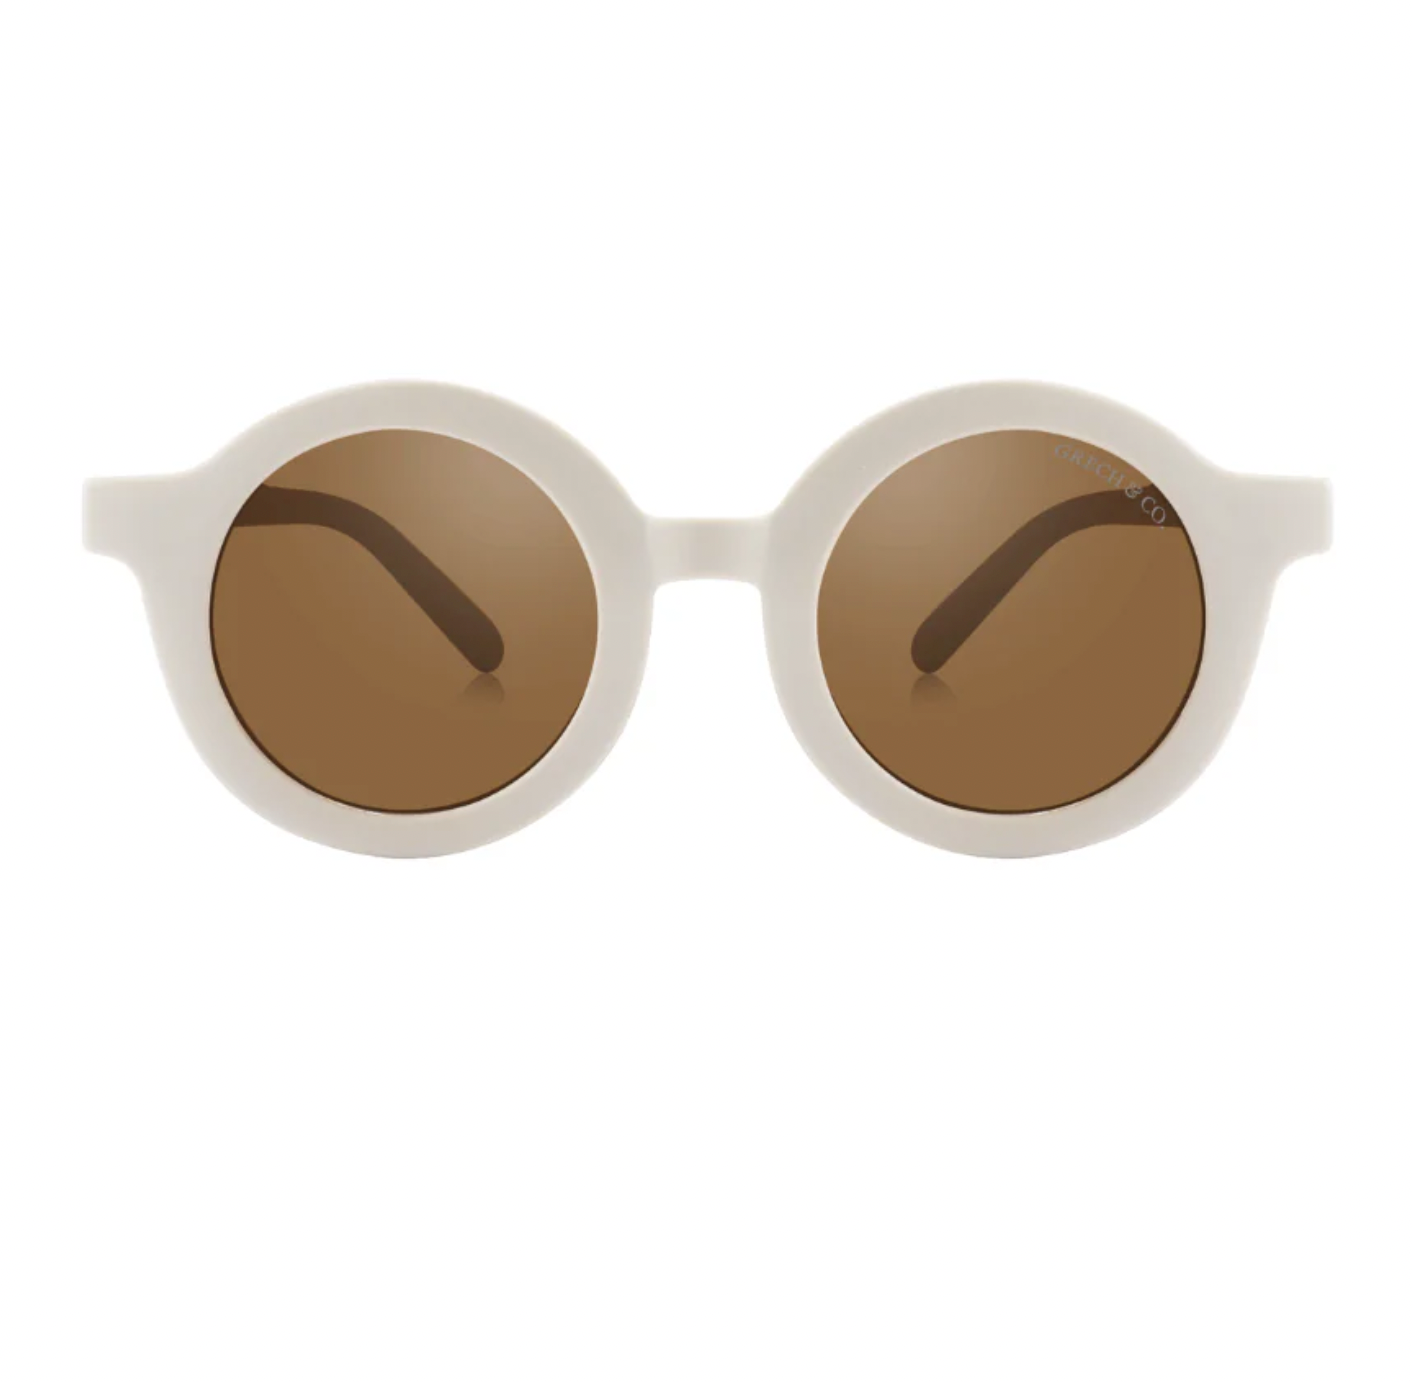 Grech & Co Original Round Sunglasses Sand